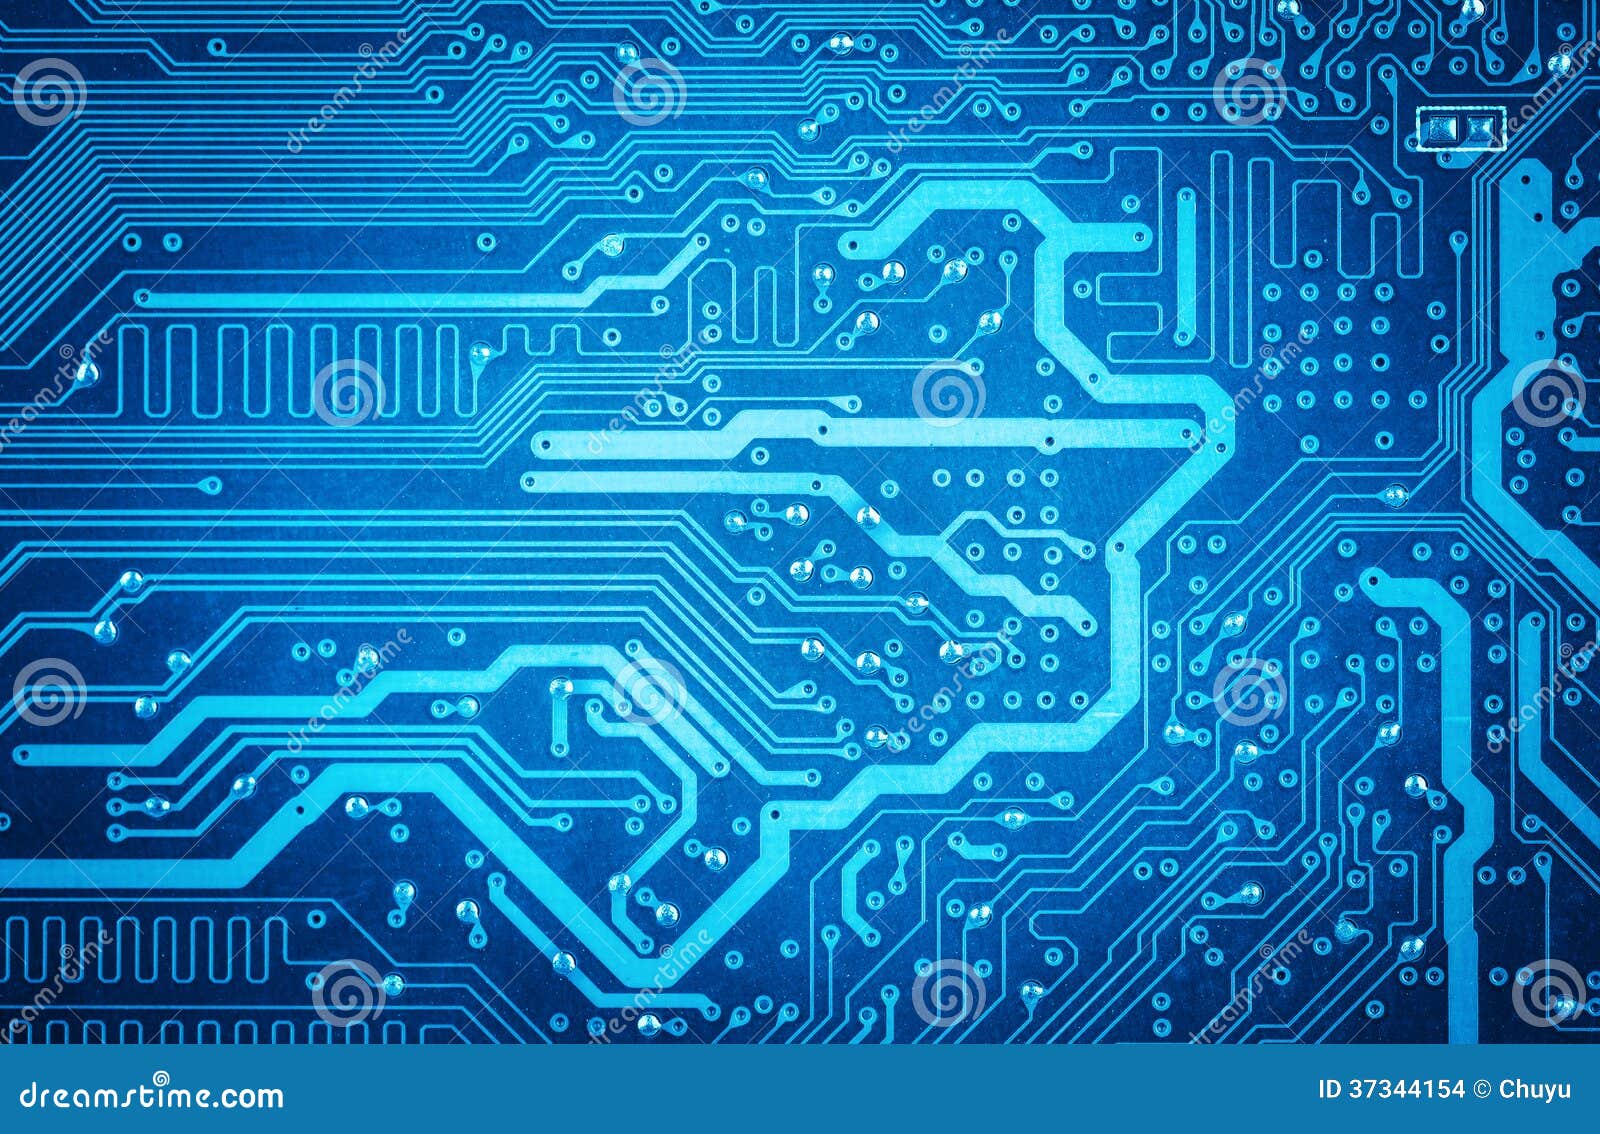 Blue Circuit Board Tech Geek Computer Art 15x10cm #8127 Photograph 6x4"